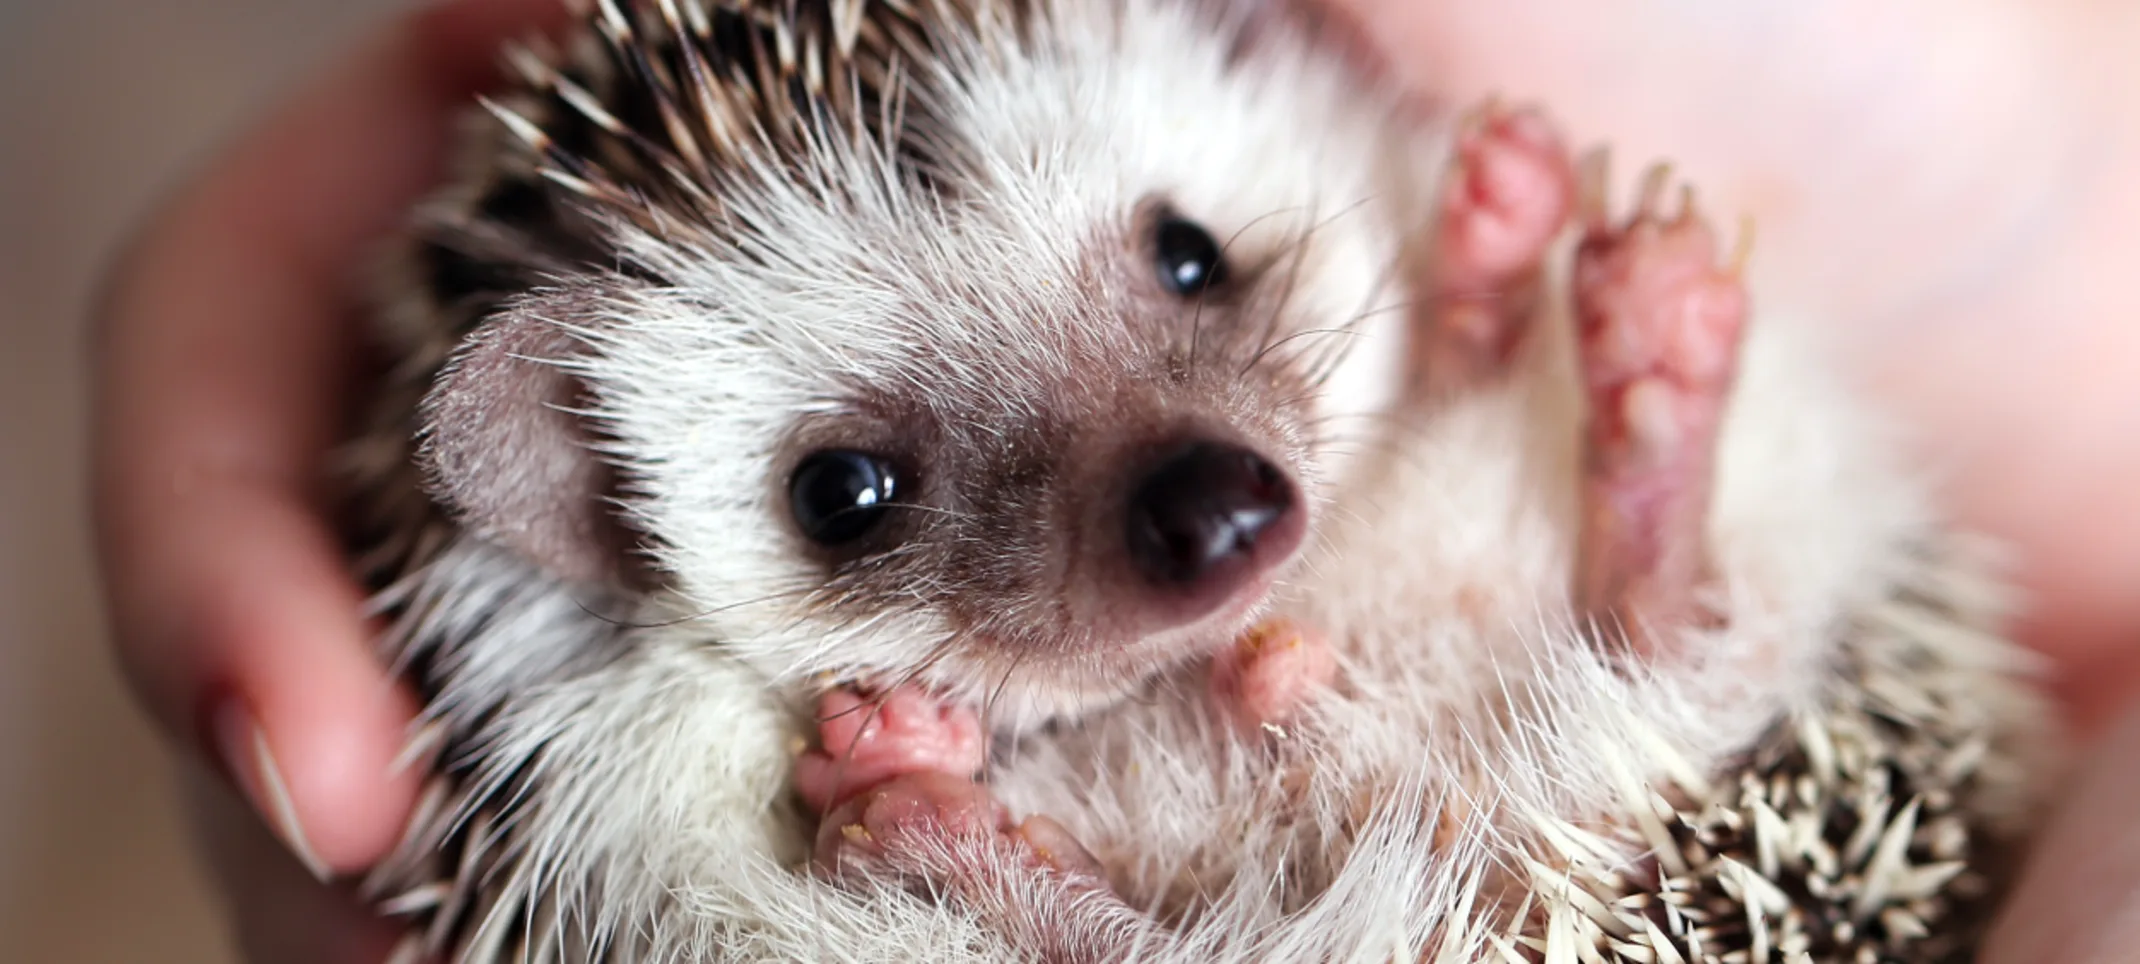 Hedgehog being held